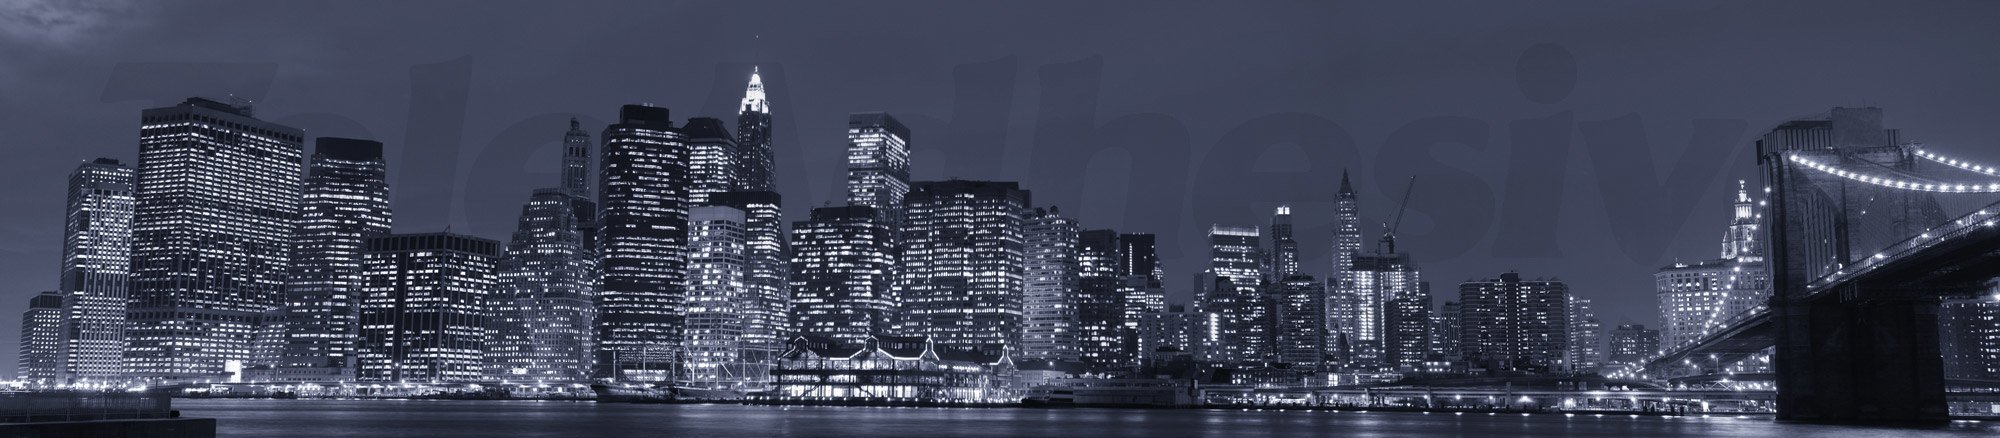 Fototapeten: Panorama von Manhattan in der Nacht